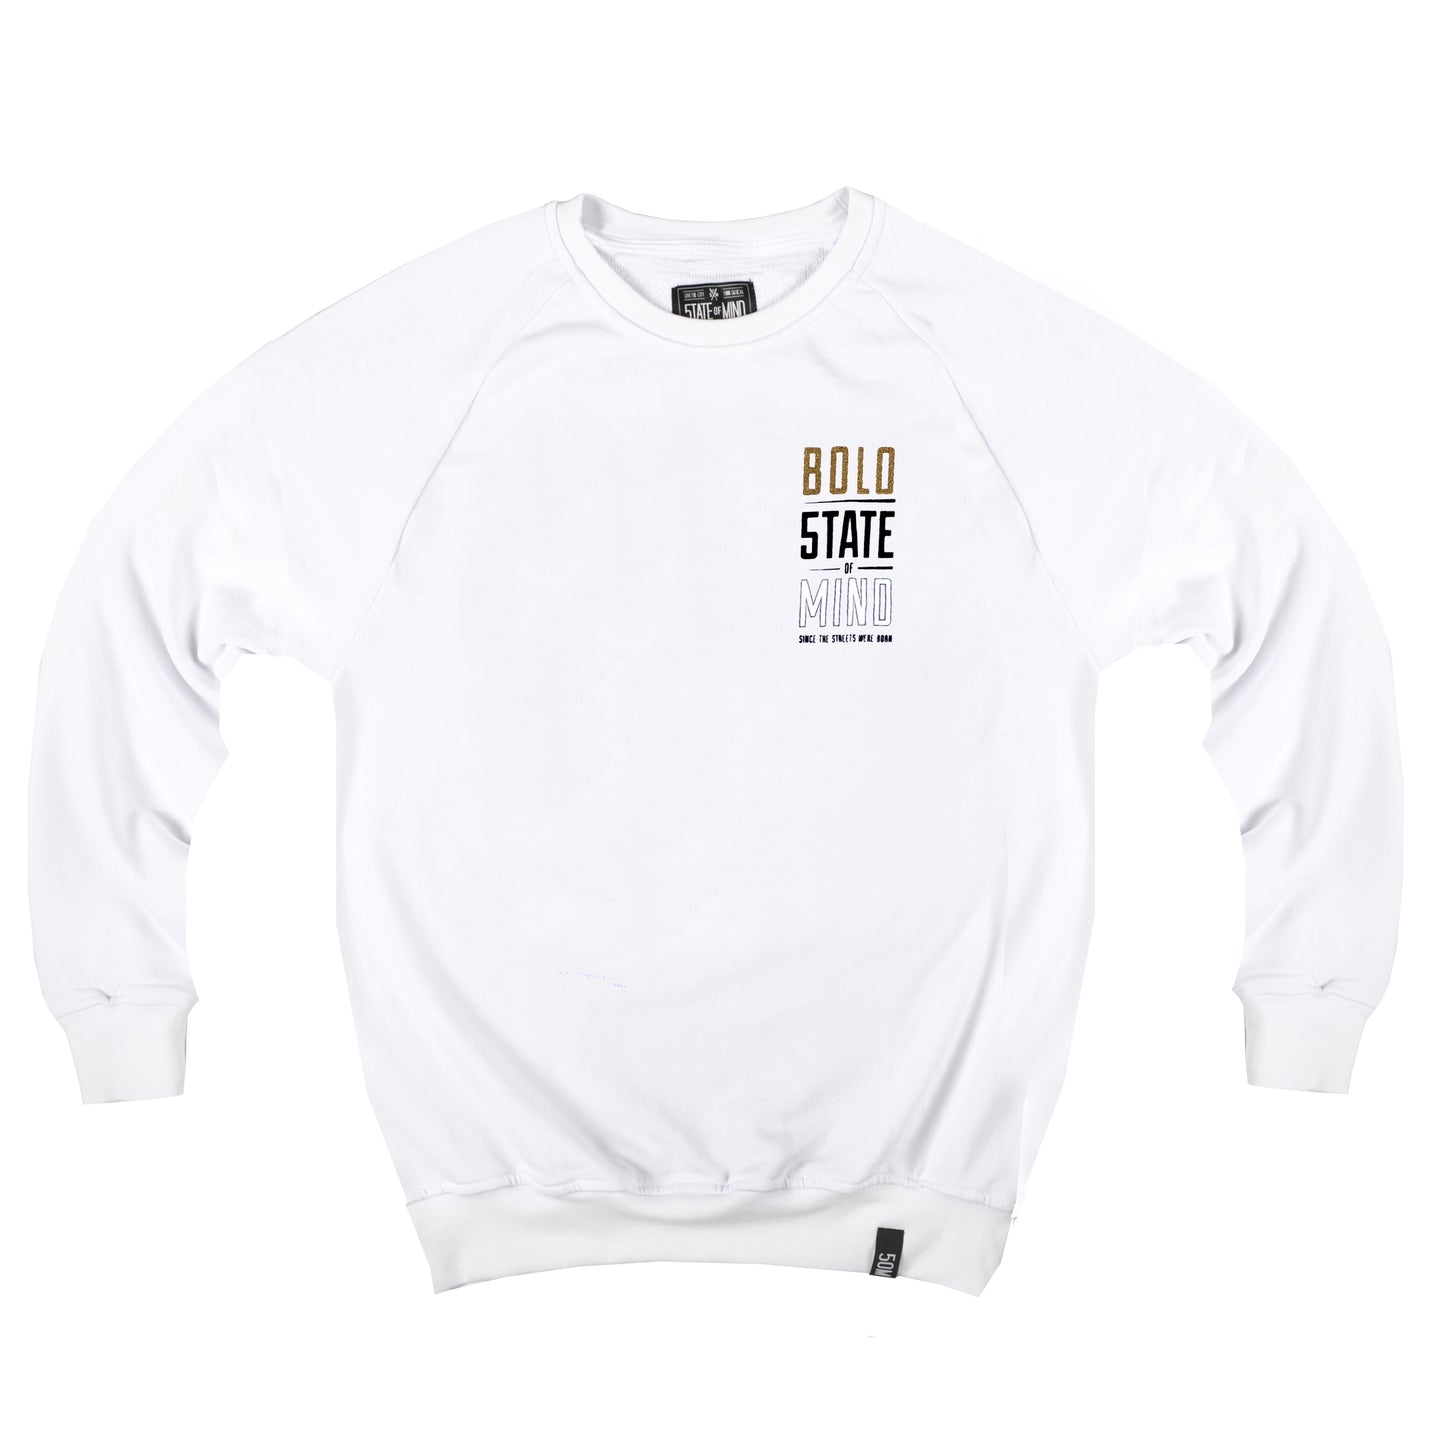 "BOLO CELEBRATION" gold & reflective white sweatshirt